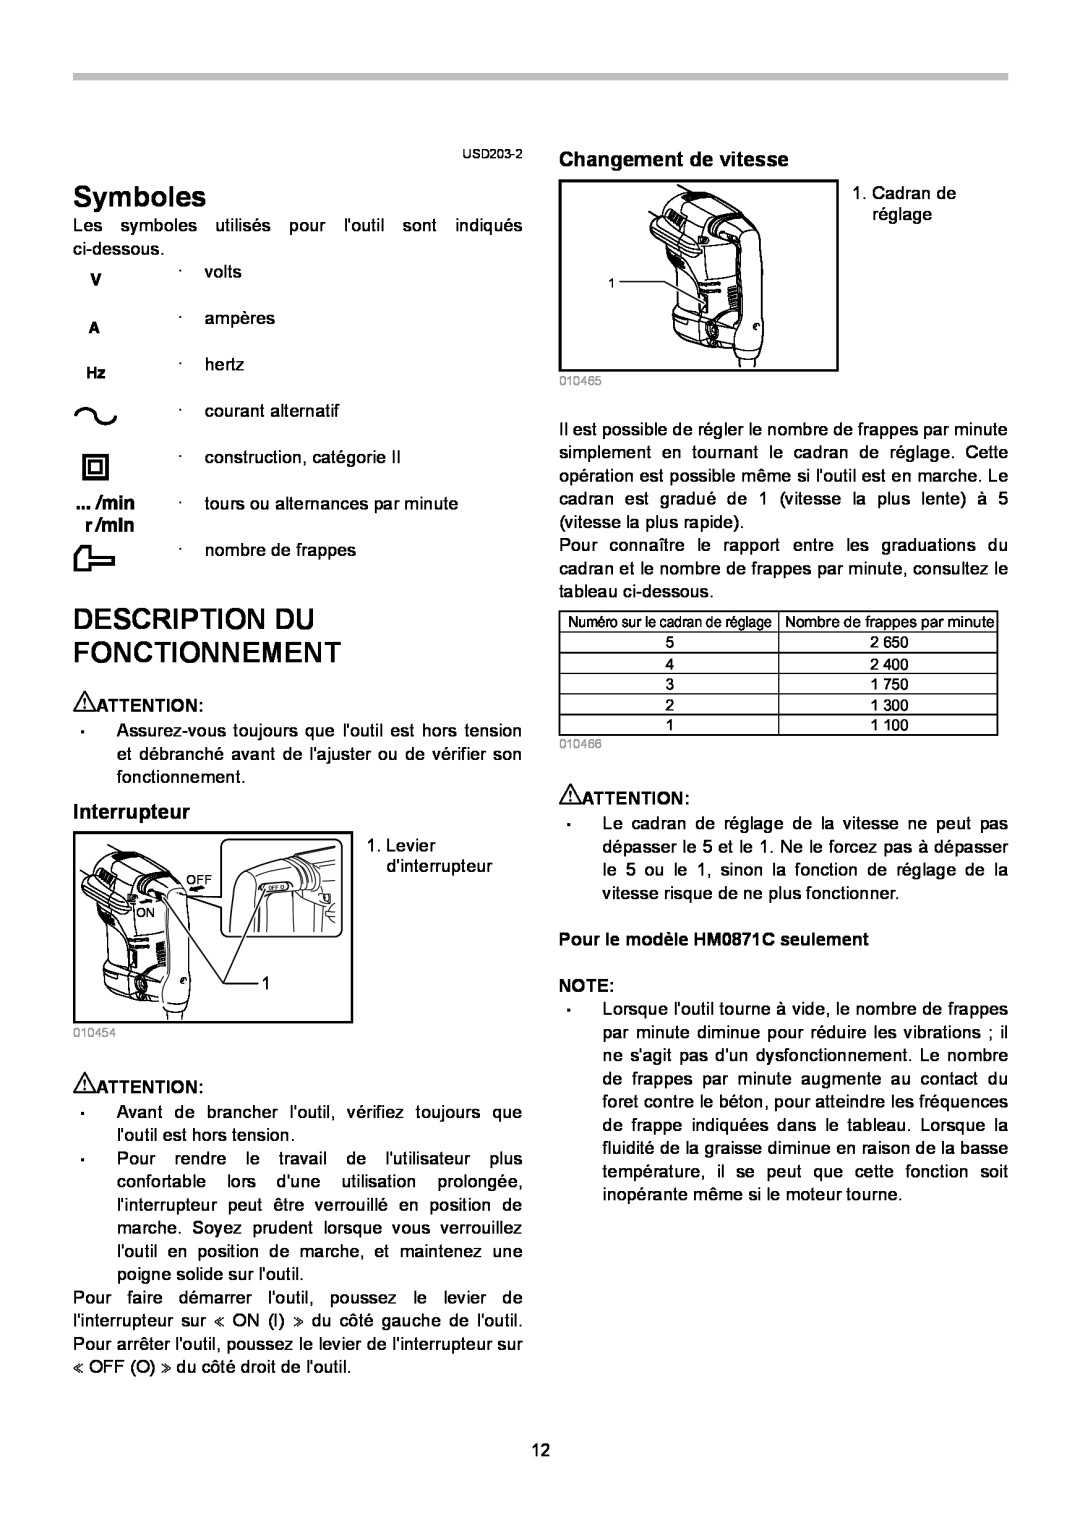 Makita HM0871C, HM0870C instruction manual Symboles, Description Du Fonctionnement, Changement de vitesse, Interrupteur 